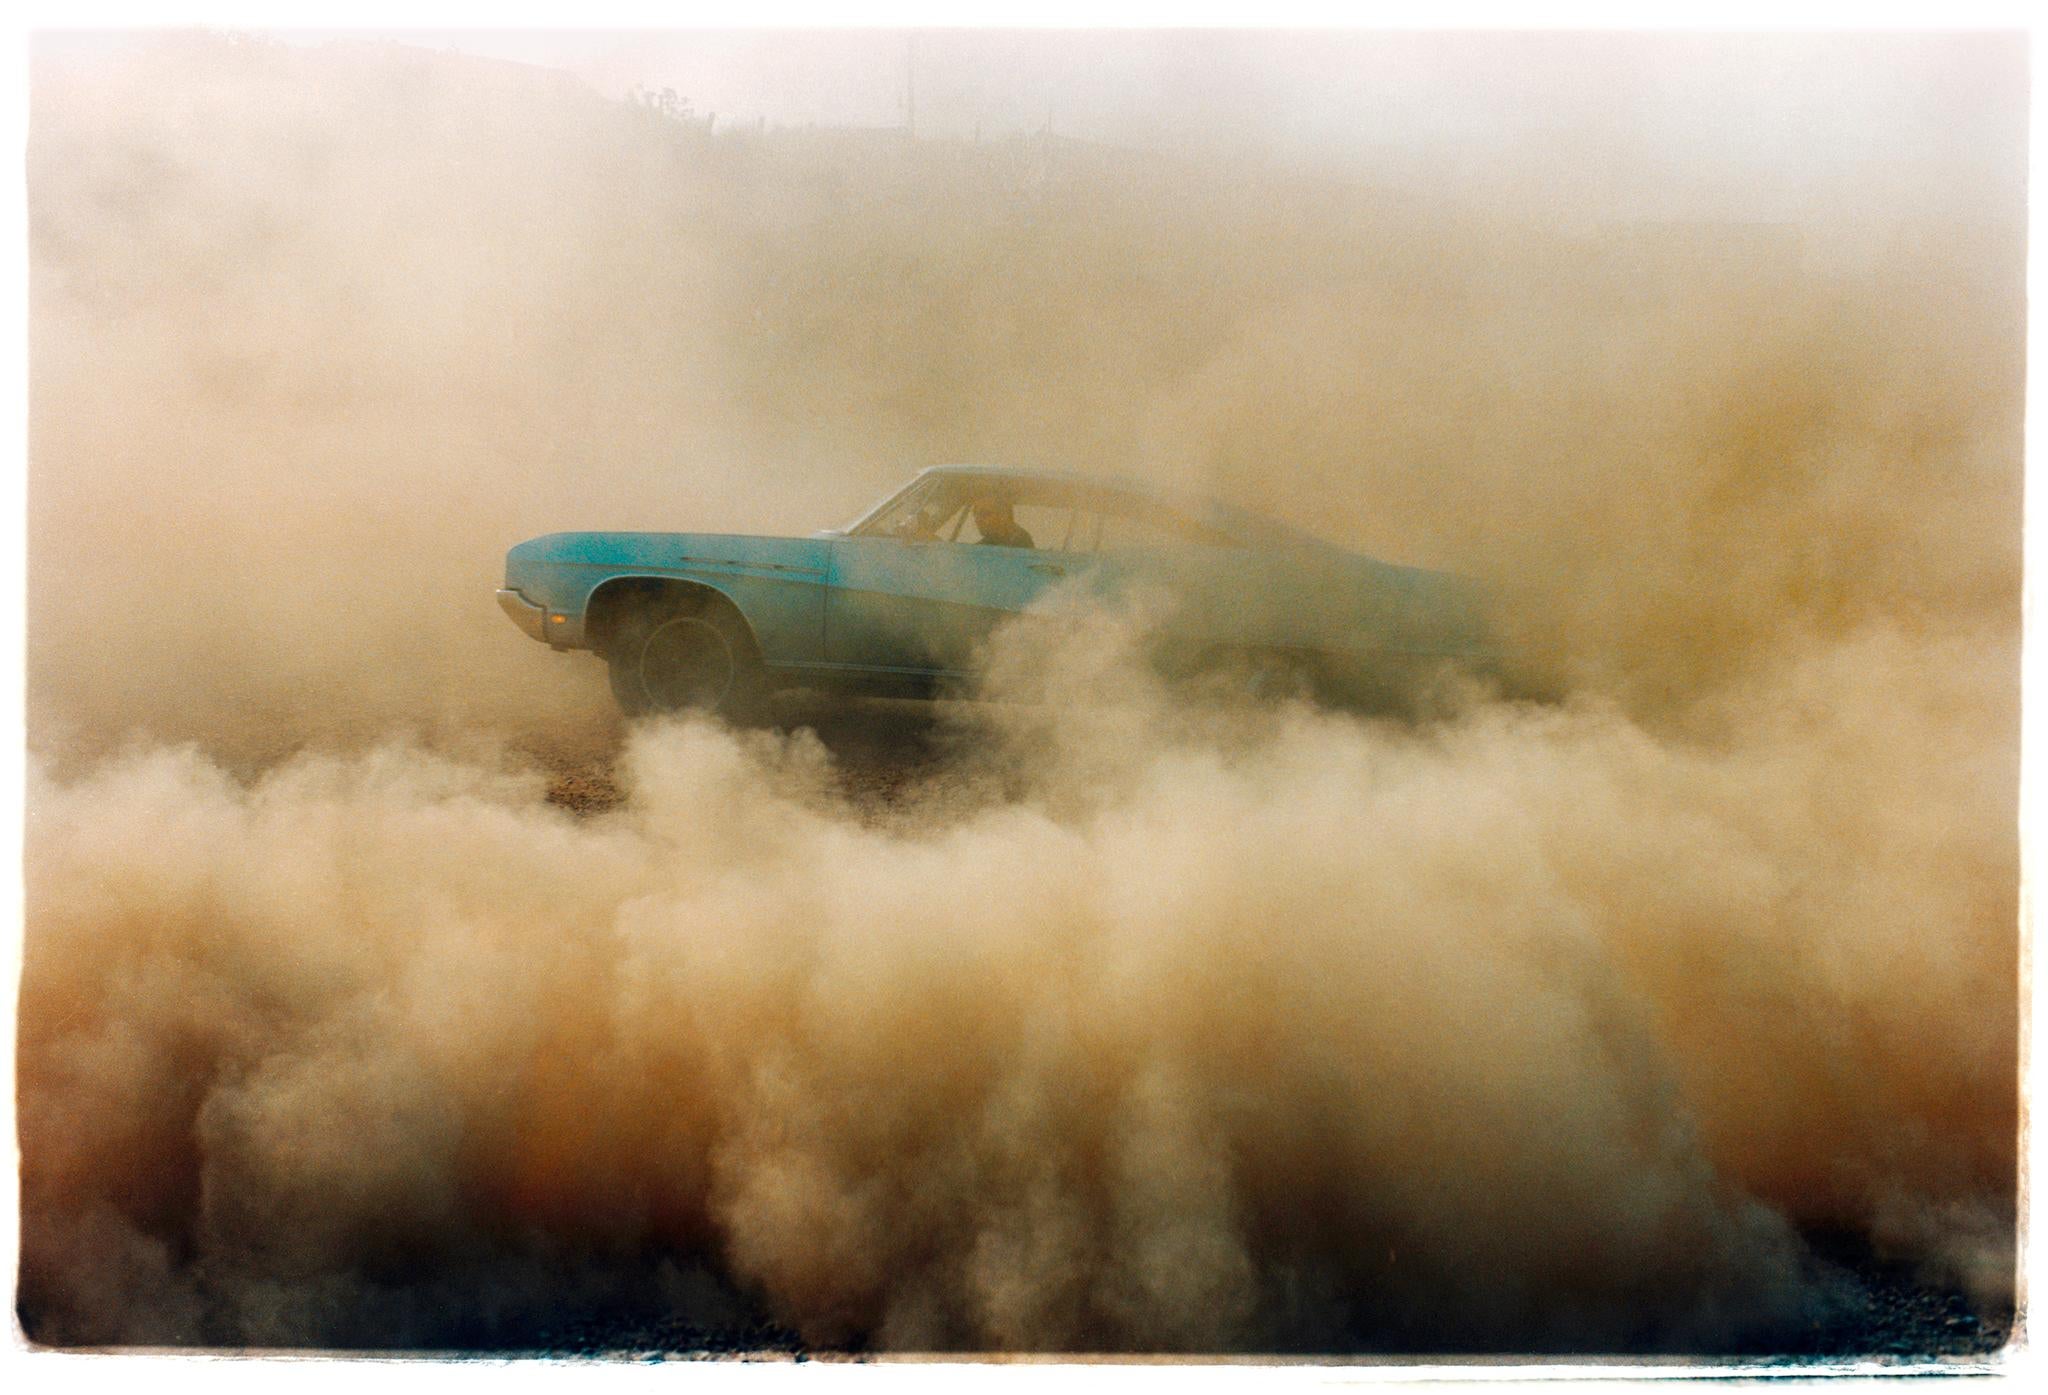 Buick in the Dust, Hemsby, Norfolk - Ensemble de quatre photographies de voitures encadrées - Contemporain Print par Richard Heeps